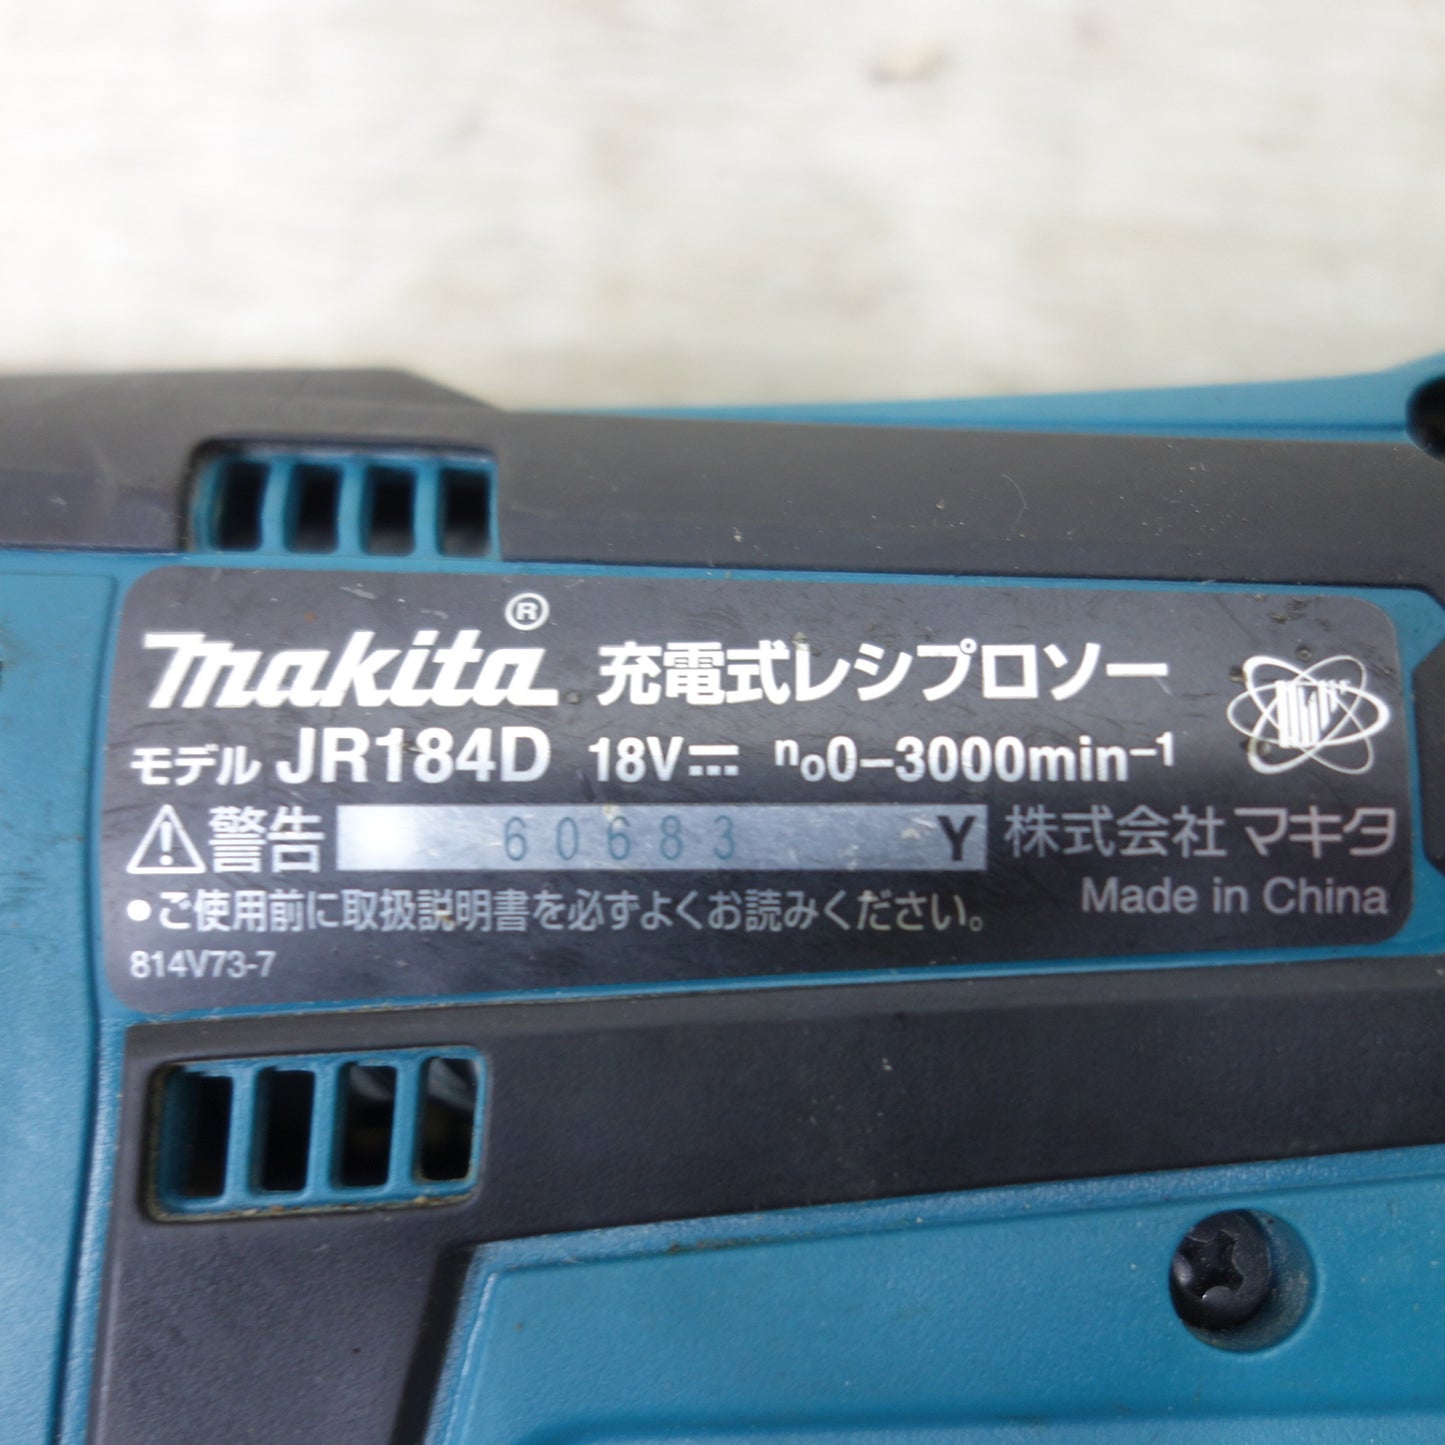 [送料無料] ◆makita マキタ 充電式レシプロソー JR184D 18V 電動工具 切断機 本体のみ◆